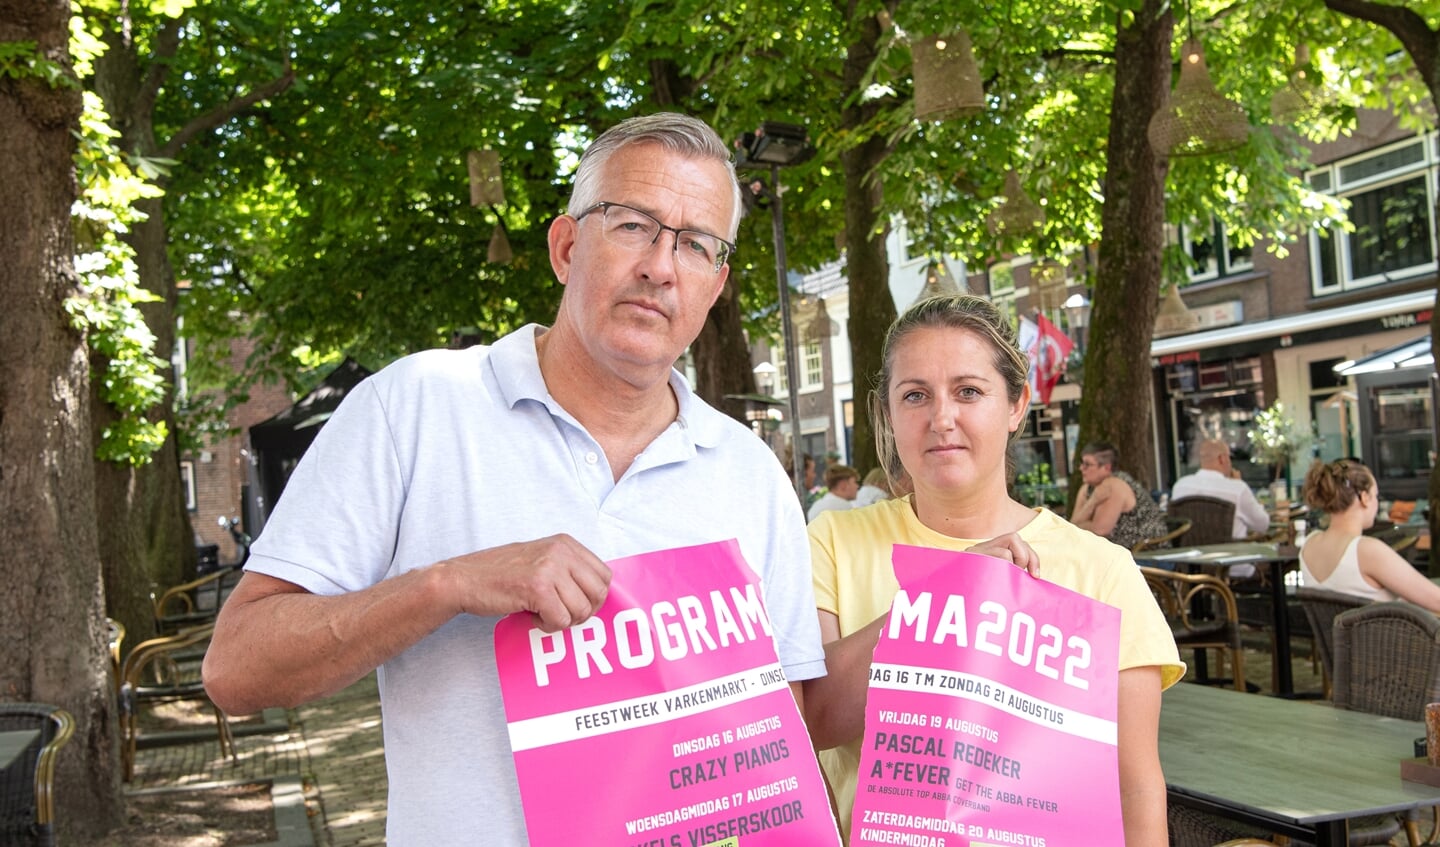 Marco Uijterlinde en Esther Bergman verscheuren de poster met het programma van de Feestweek Varkenmarkt